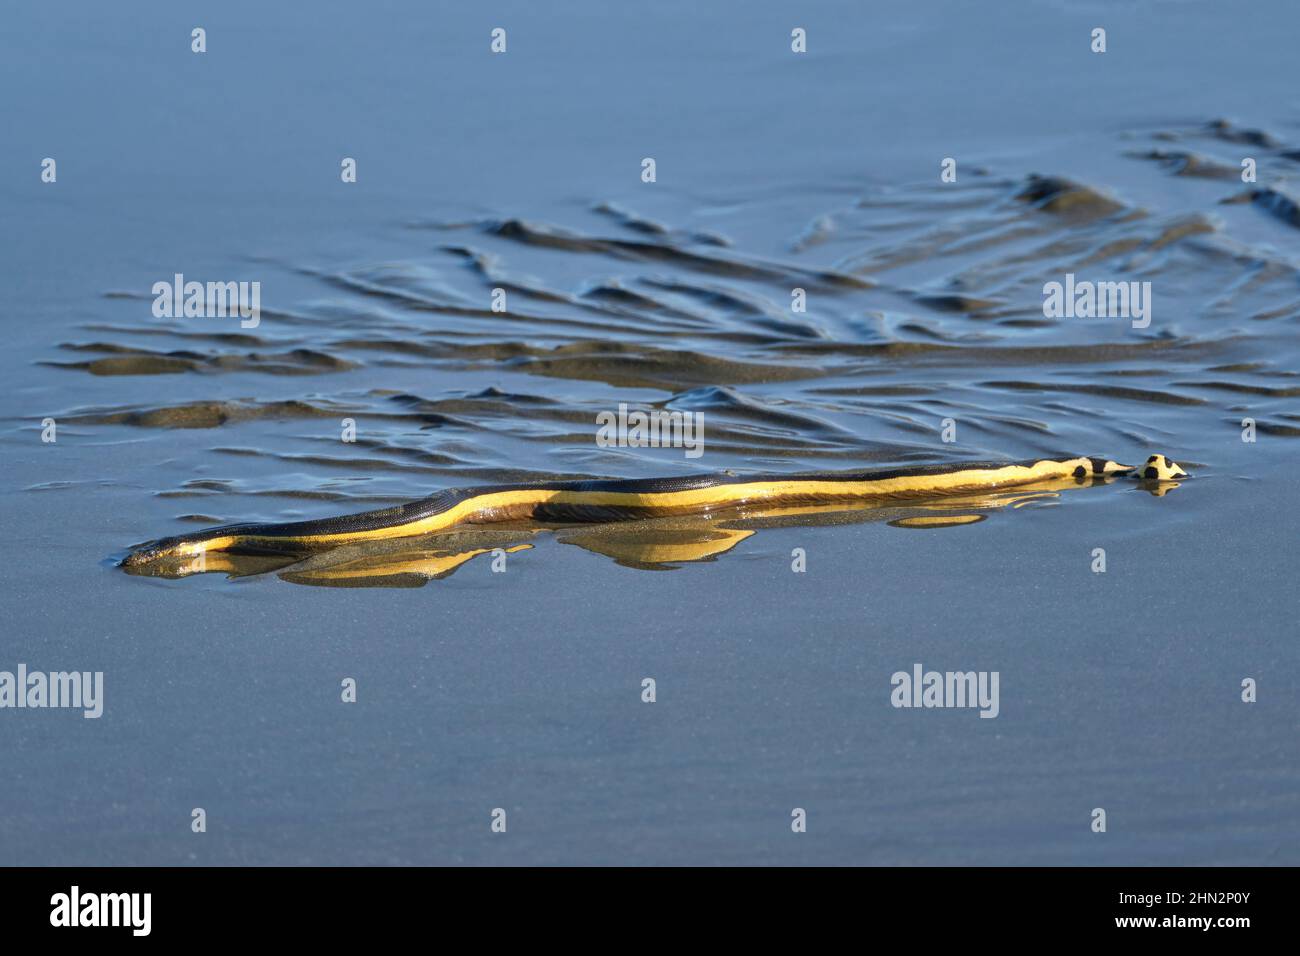 Un serpent de mer venimeux à ventre jaune lavé sur la plage laisse des traces dans le sable humide alors qu'il essaie de se glisser vers l'océan. Banque D'Images